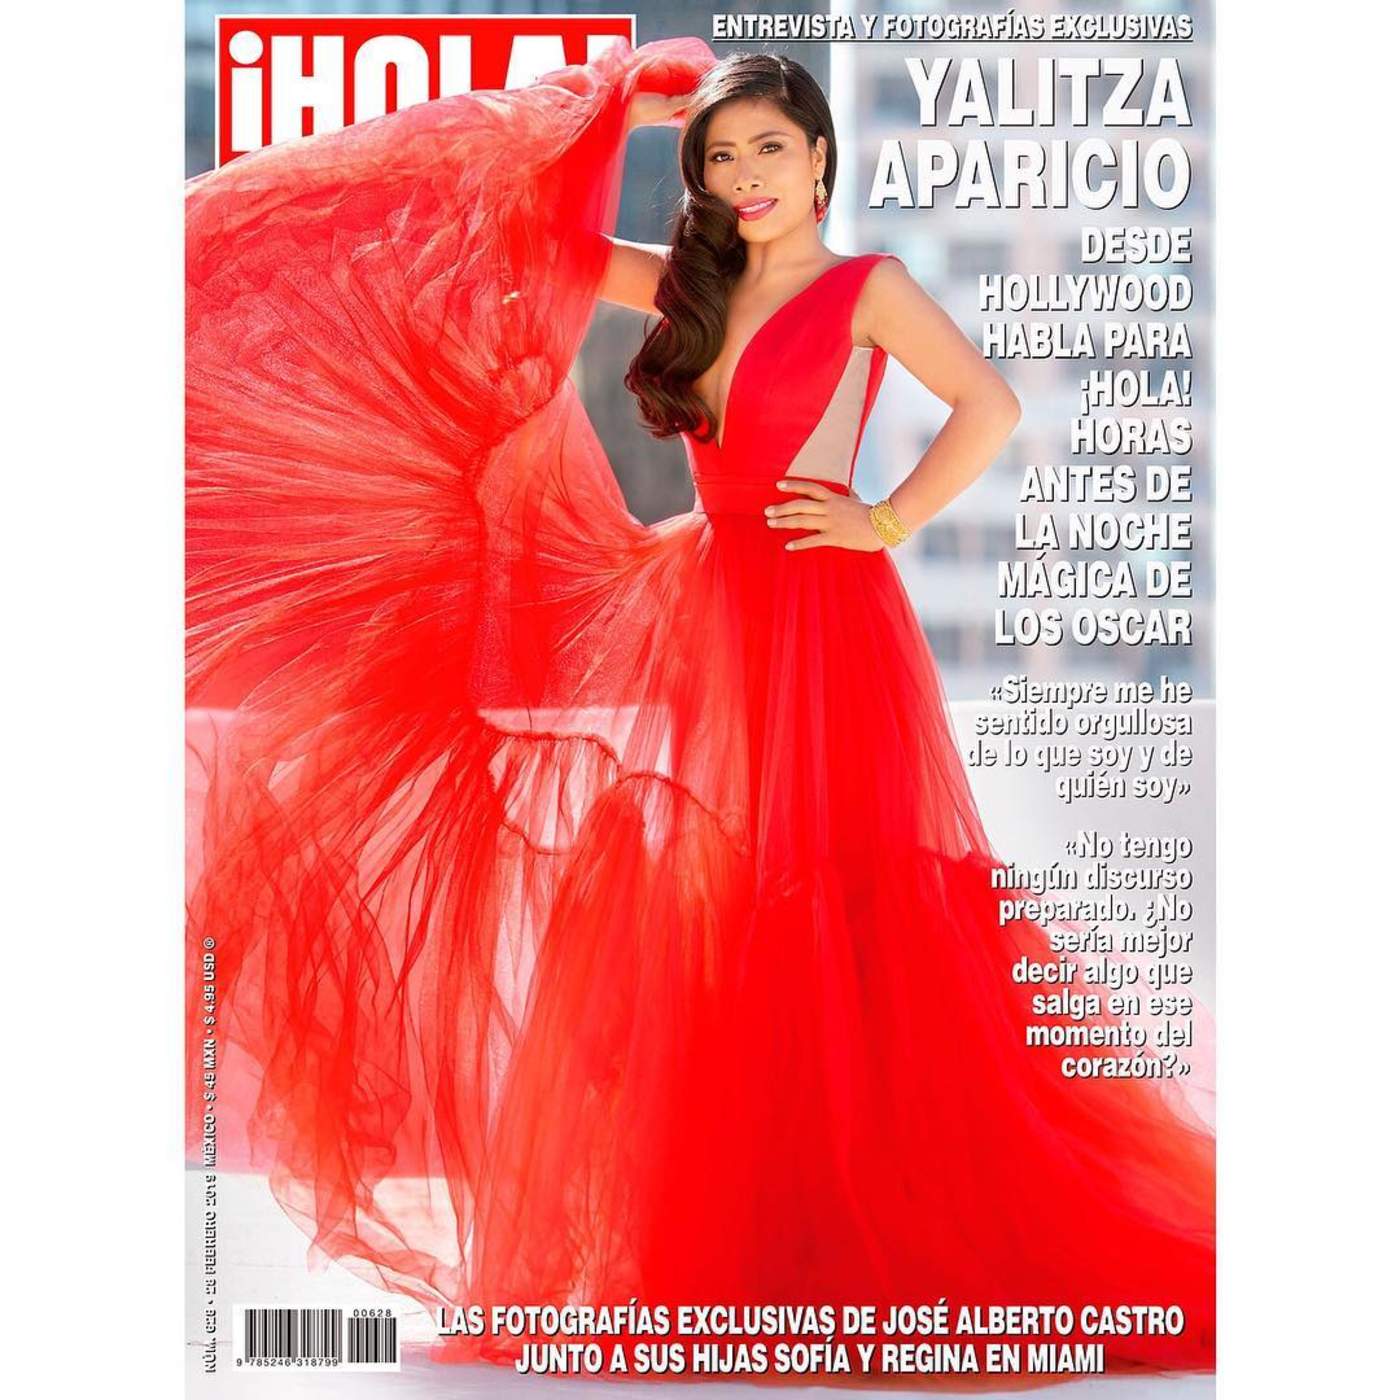 La portada de la revista Hola con Yalitza Aparicio ha dividido opiniones. (ESPECIAL) 